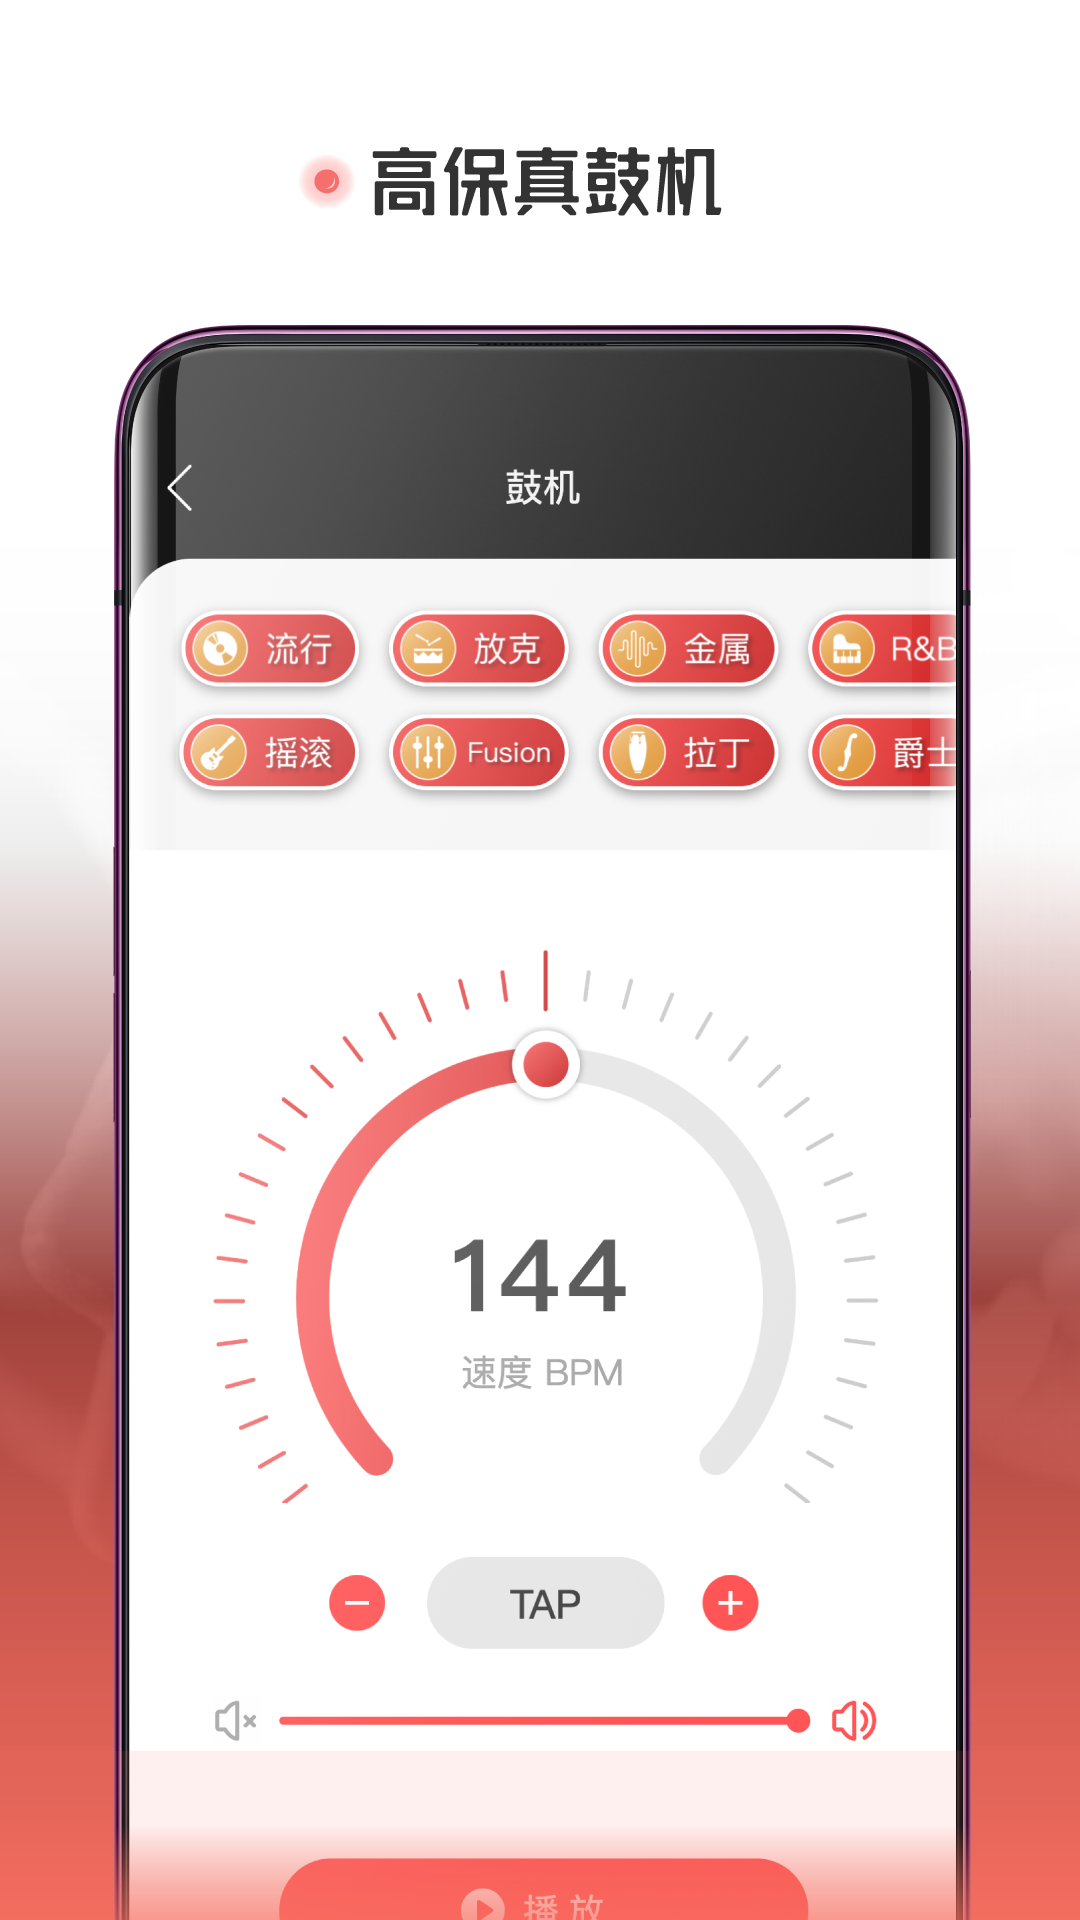 火听翻谱器app下载,火听翻谱器app安卓最新版 v1.6.1